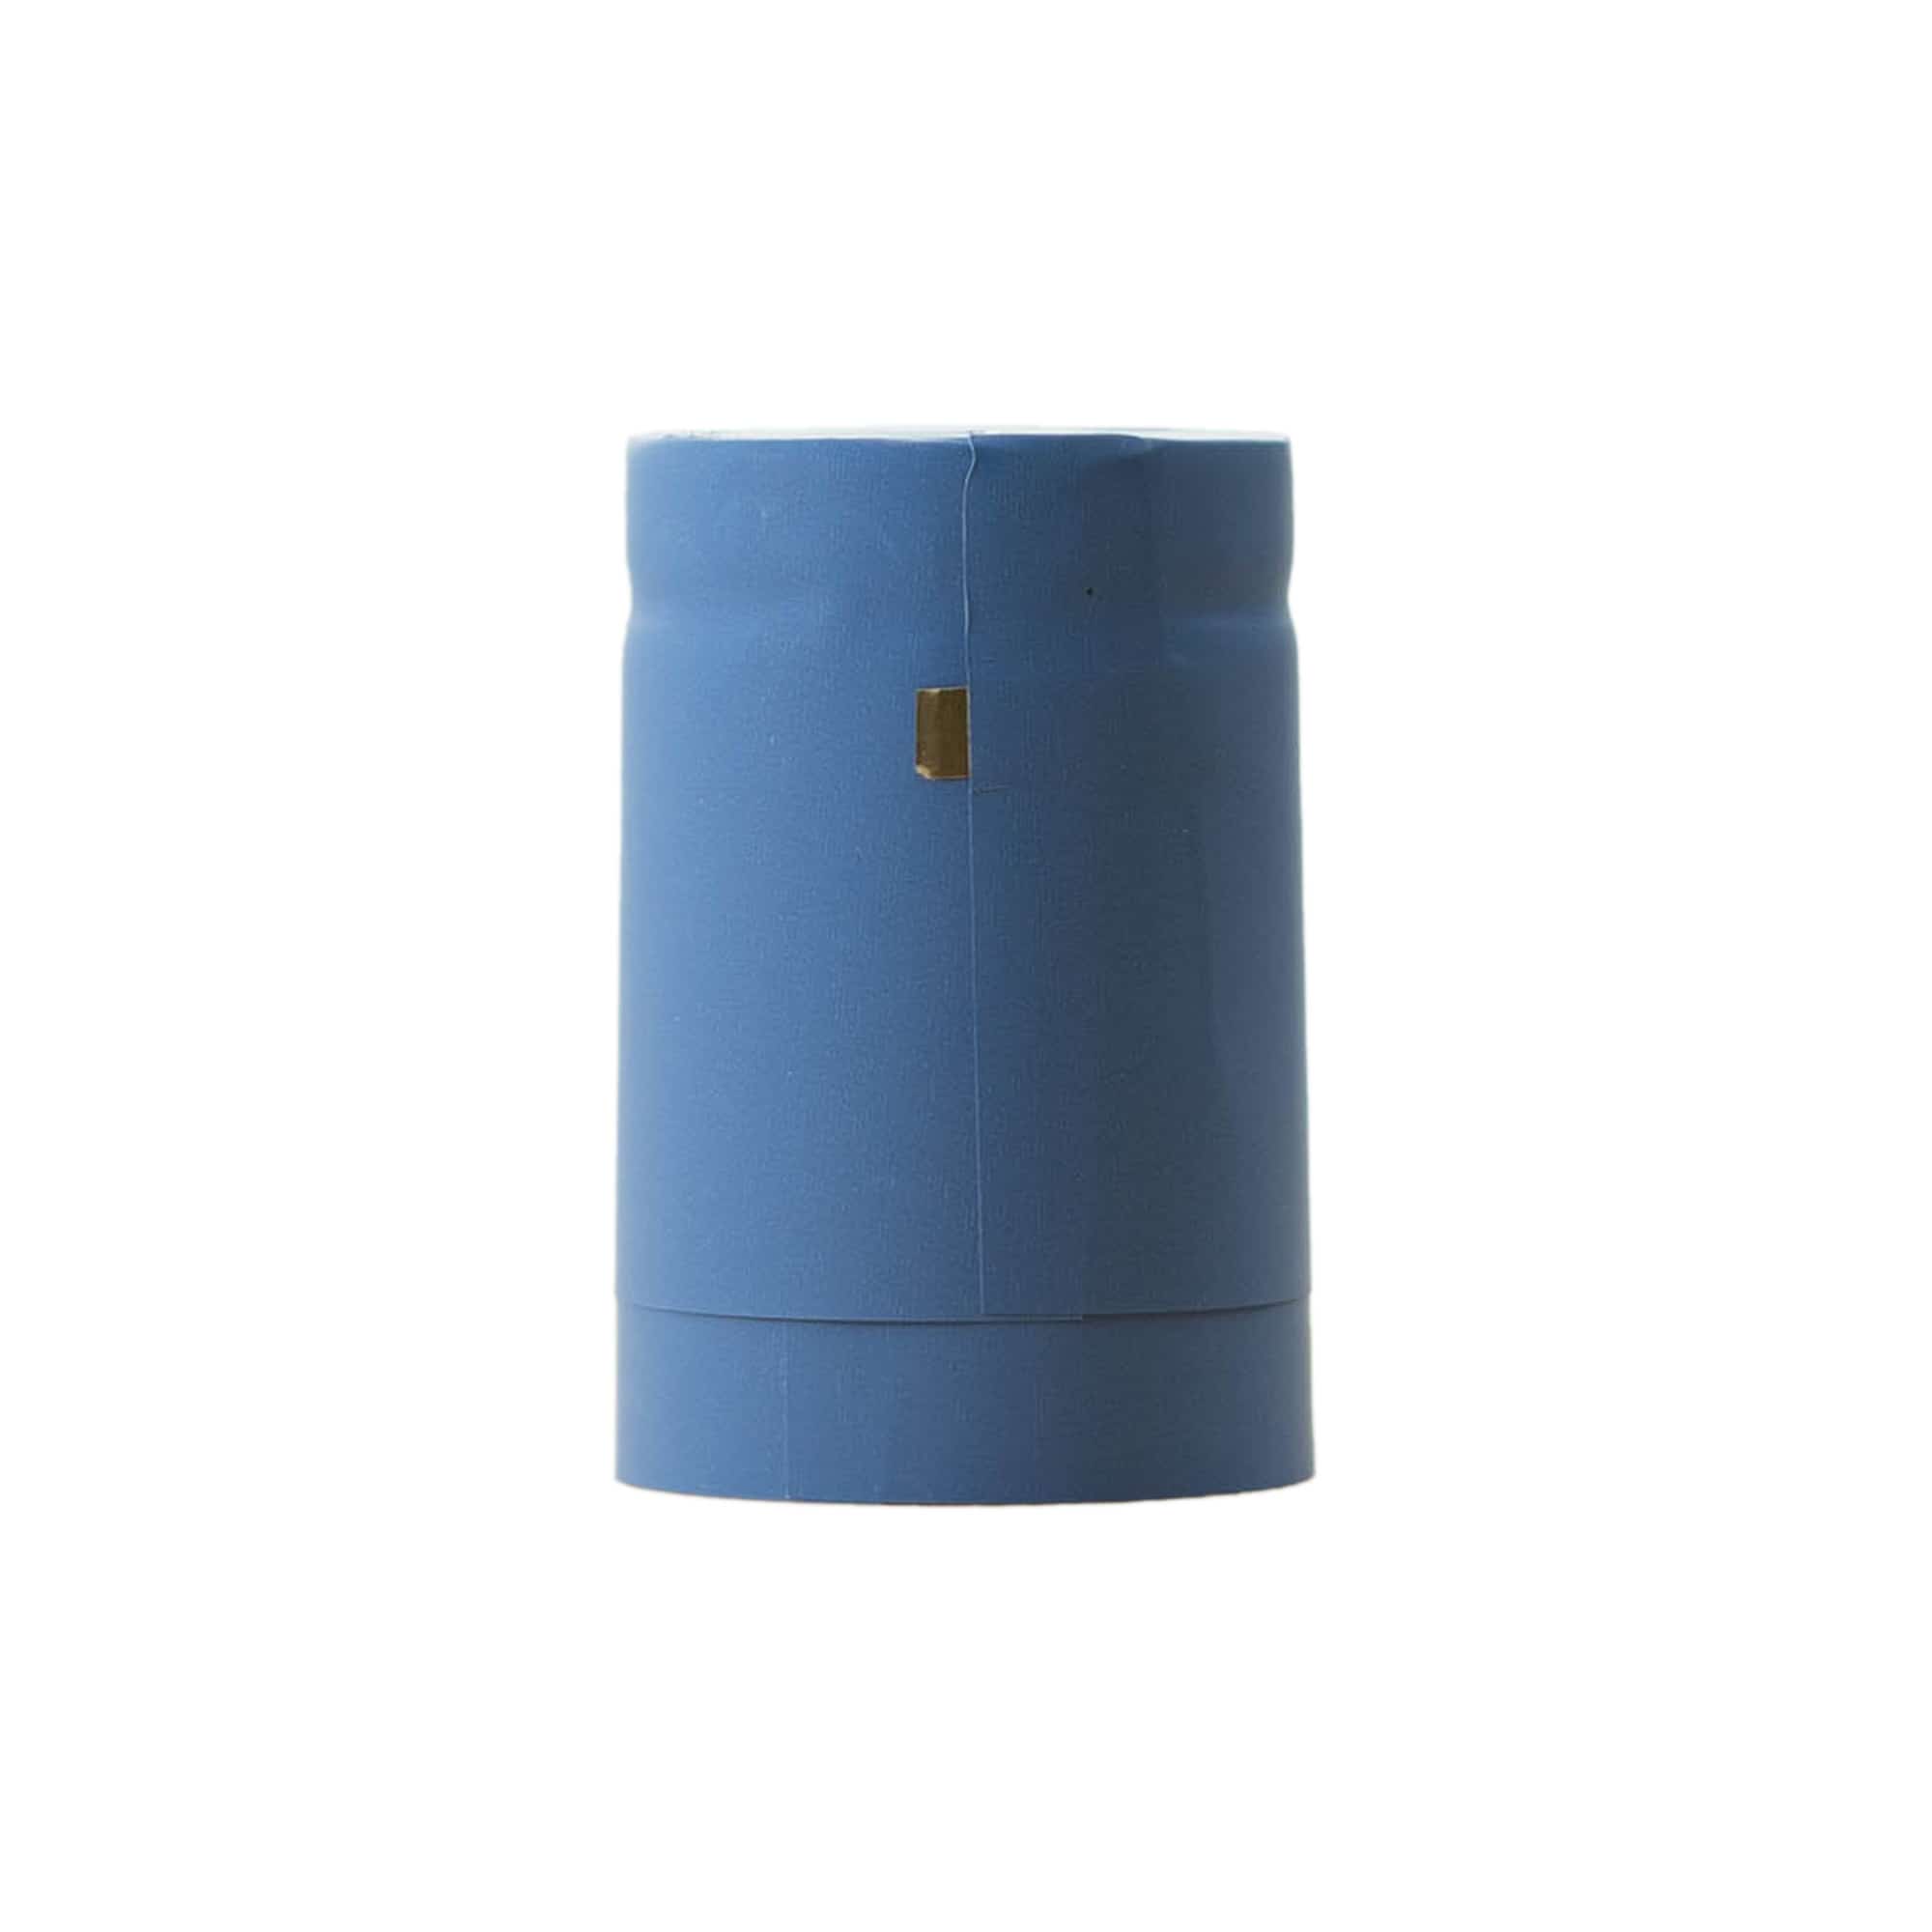 Cápsula termoencogible 32x41, plástico de PVC, azul celeste